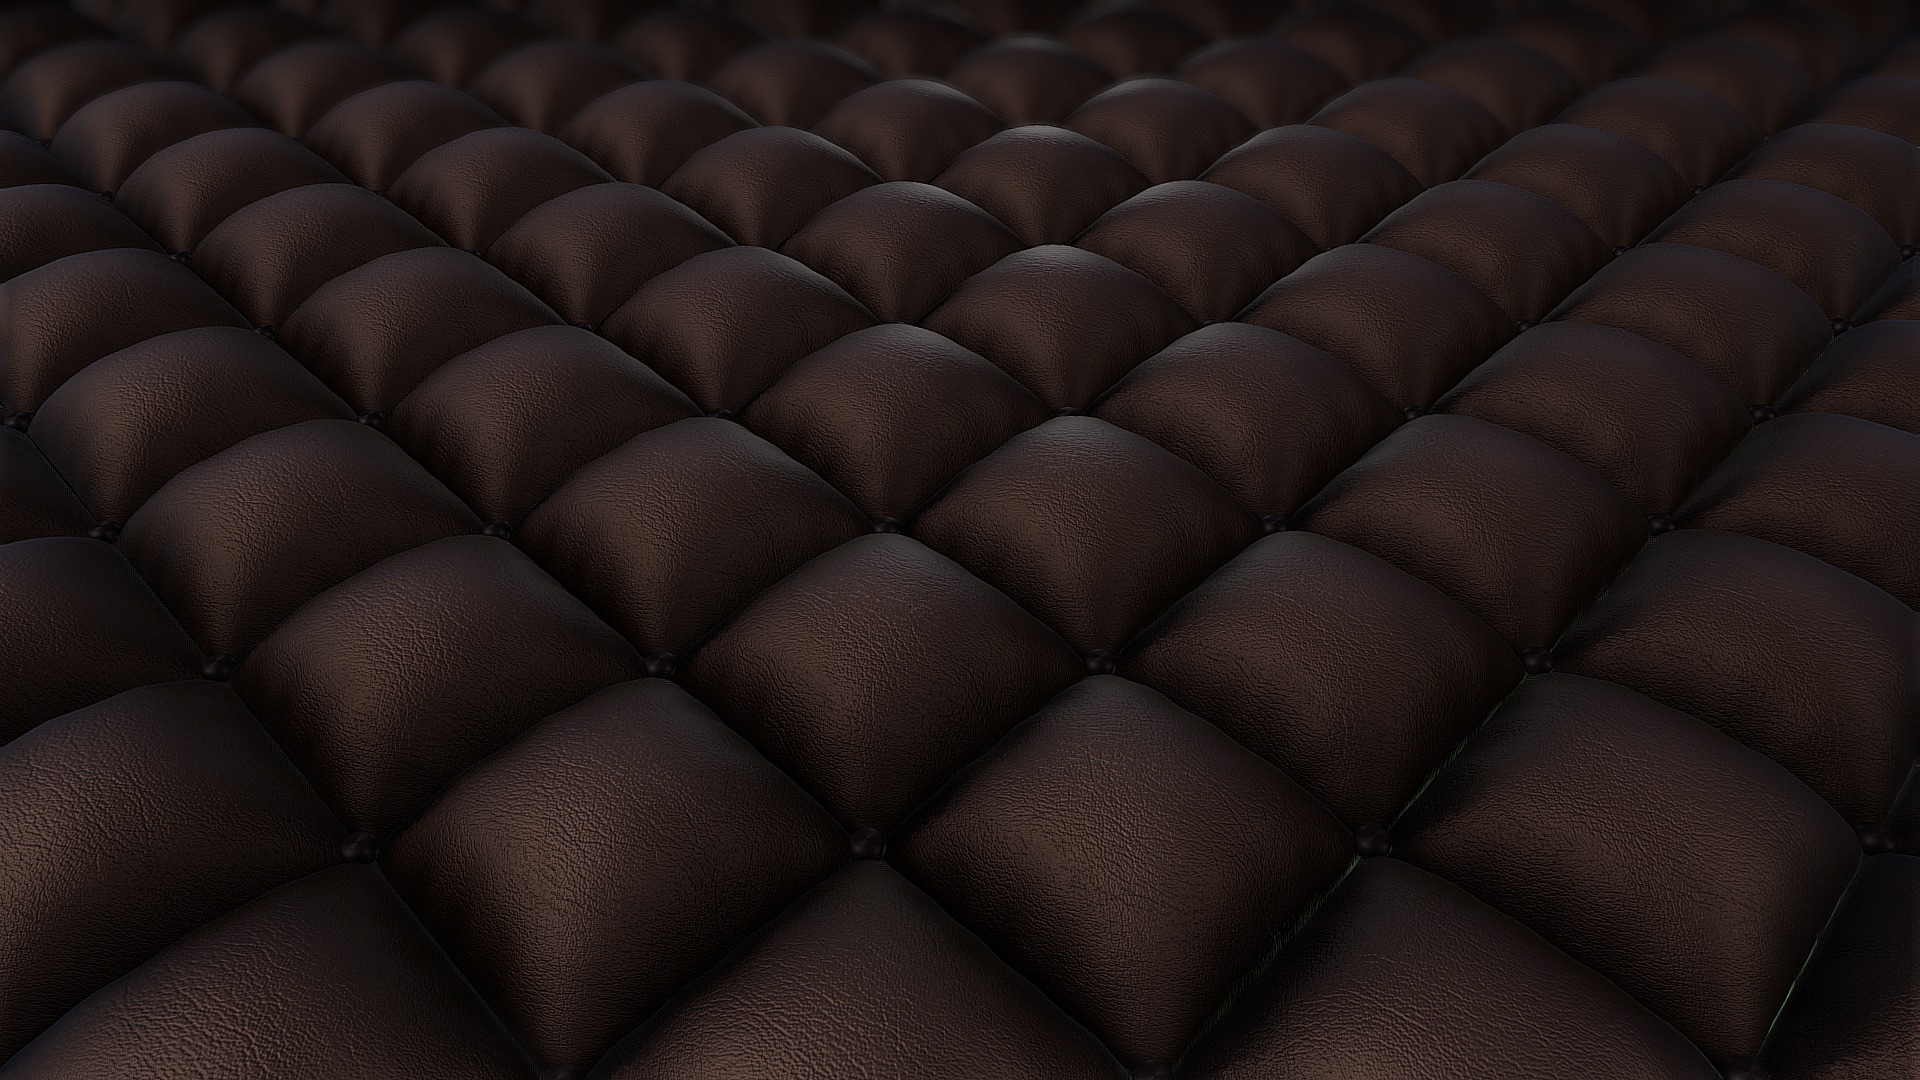 Surface of Sofa Leather - Surface of Sofa Leather - 3D model by BlockedGravity 3d model